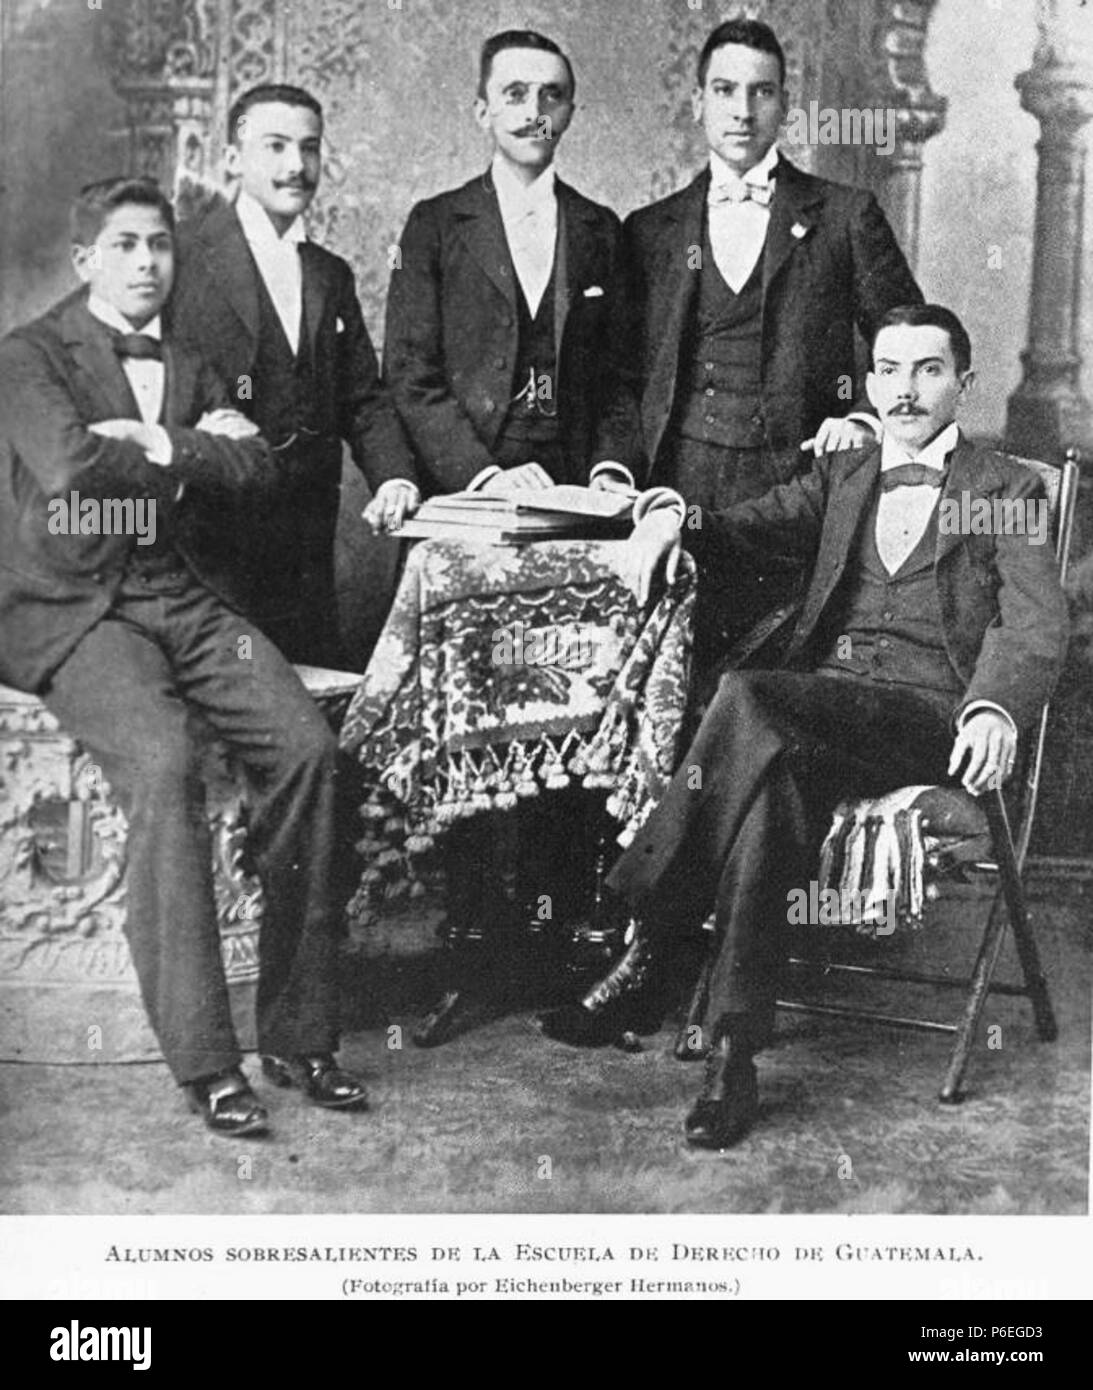 Español: Estudiantes aventajados de la Escuela de Derecho en 1897. 1897 13 Derecho1897 Stock Photo